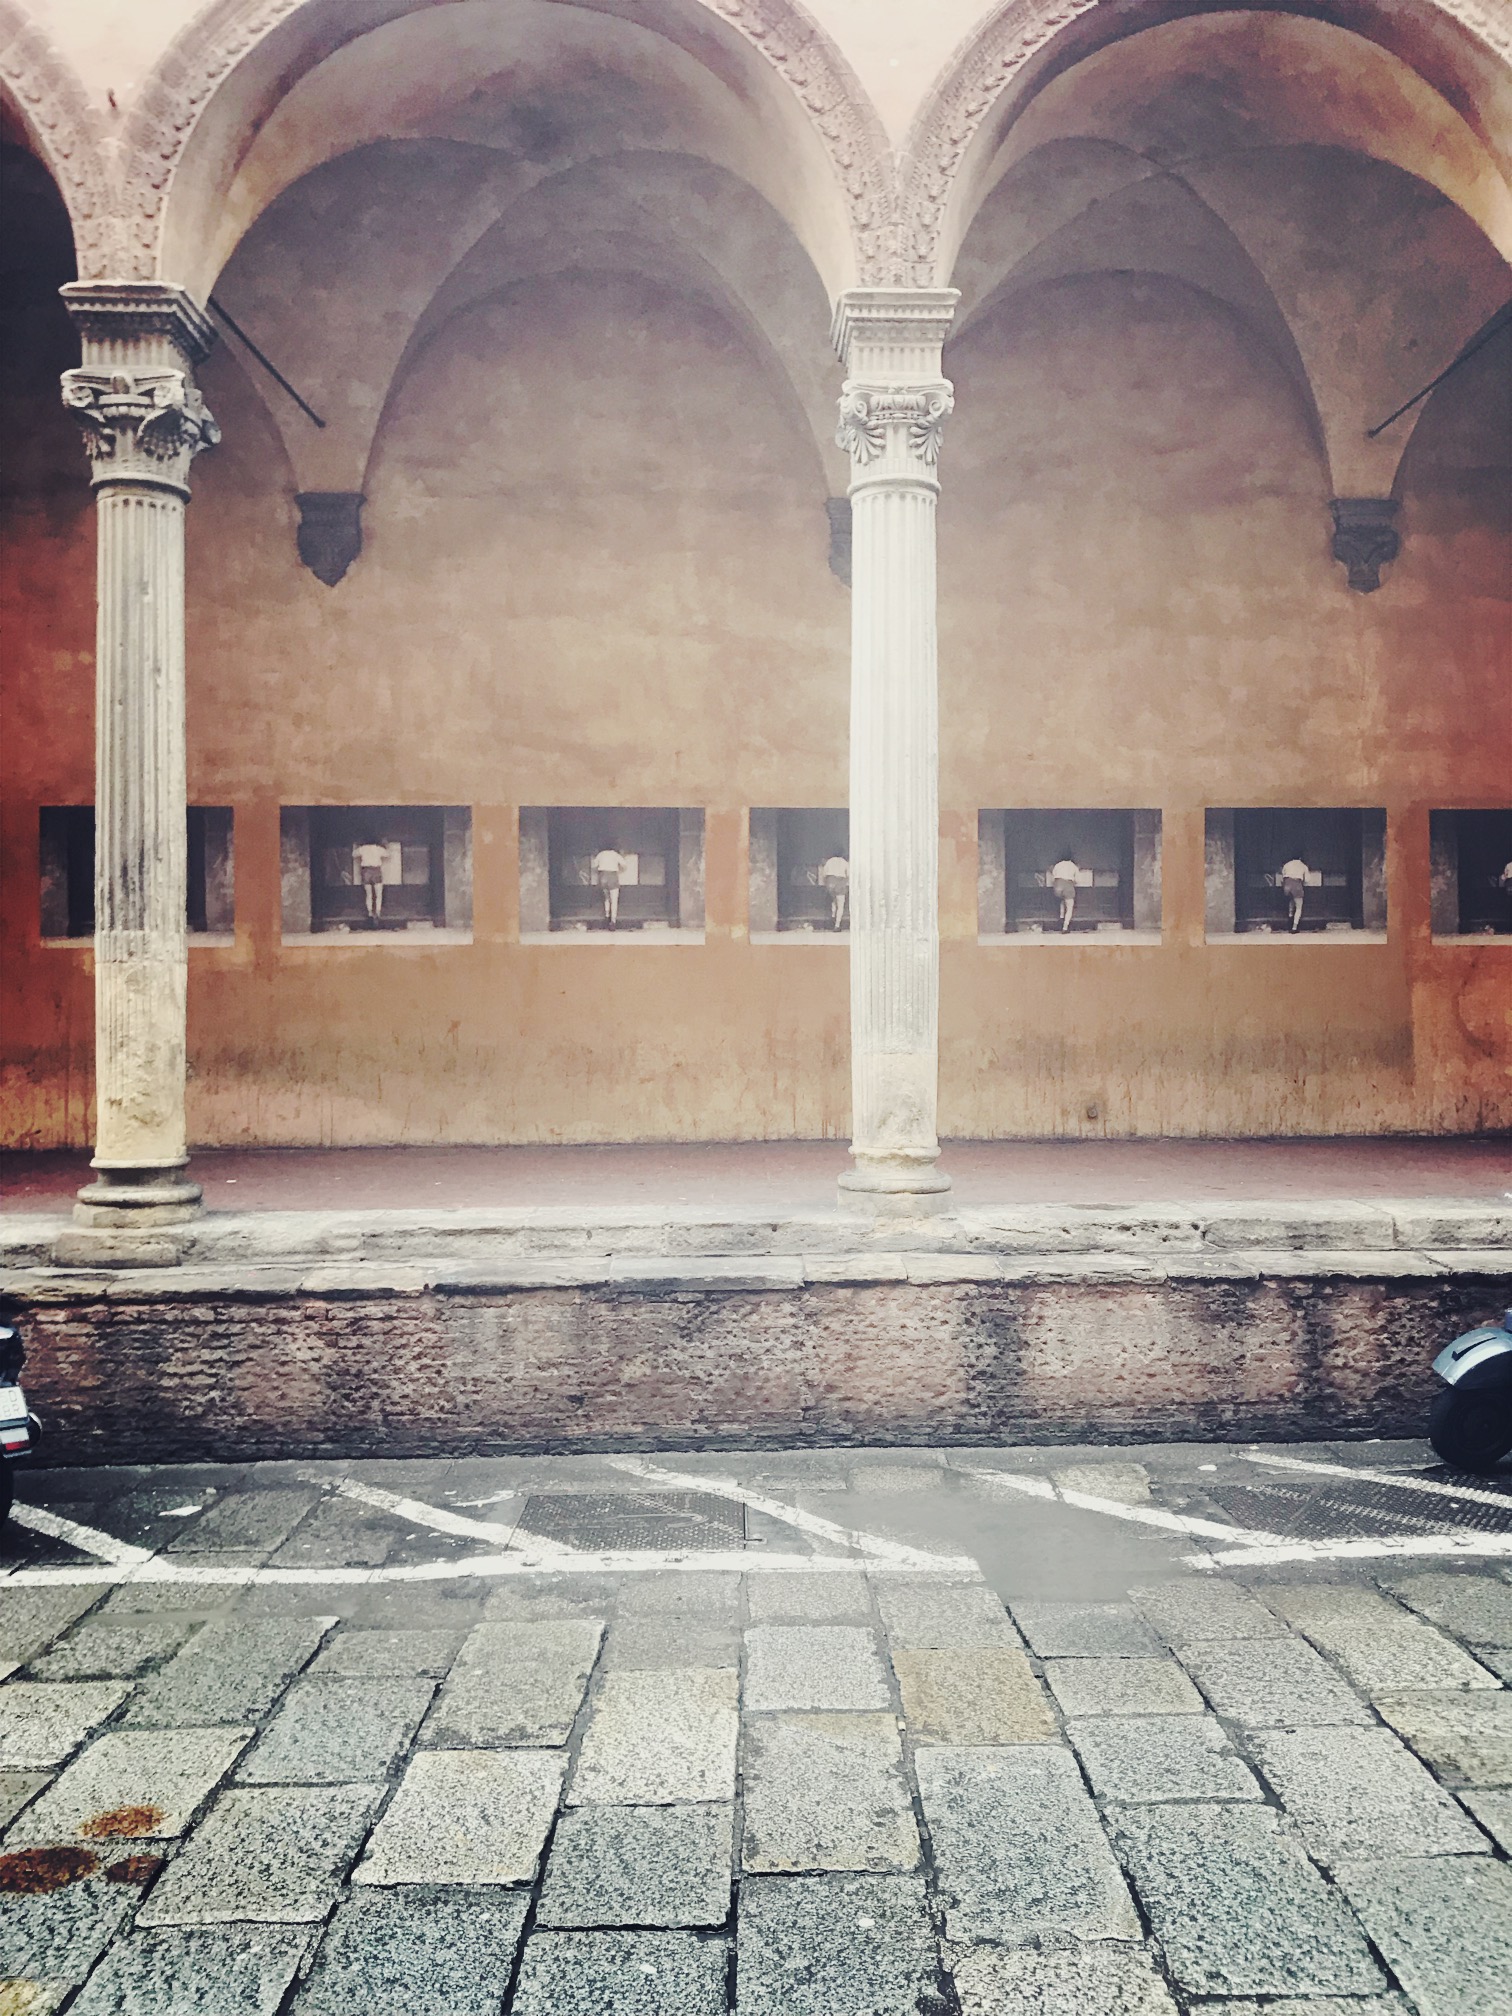 Adiacenze, Magma, P420: tre gallerie d'arte contemporanea a Bologna. Per scoprire nel centro storico qualcosa di sempre nuovo 